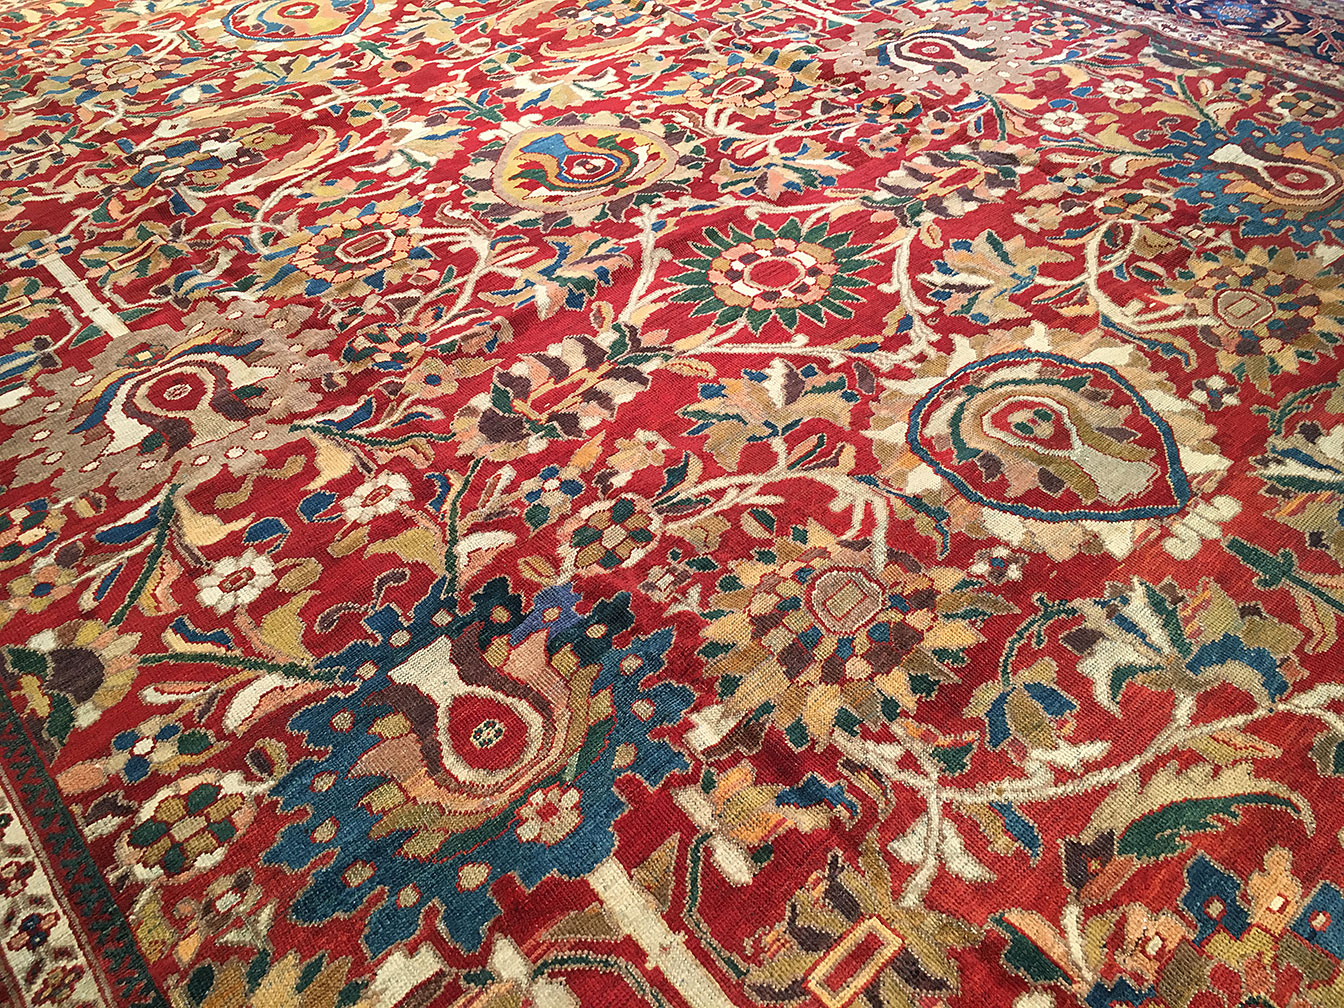 Antique sultan abad Carpet - # 52666